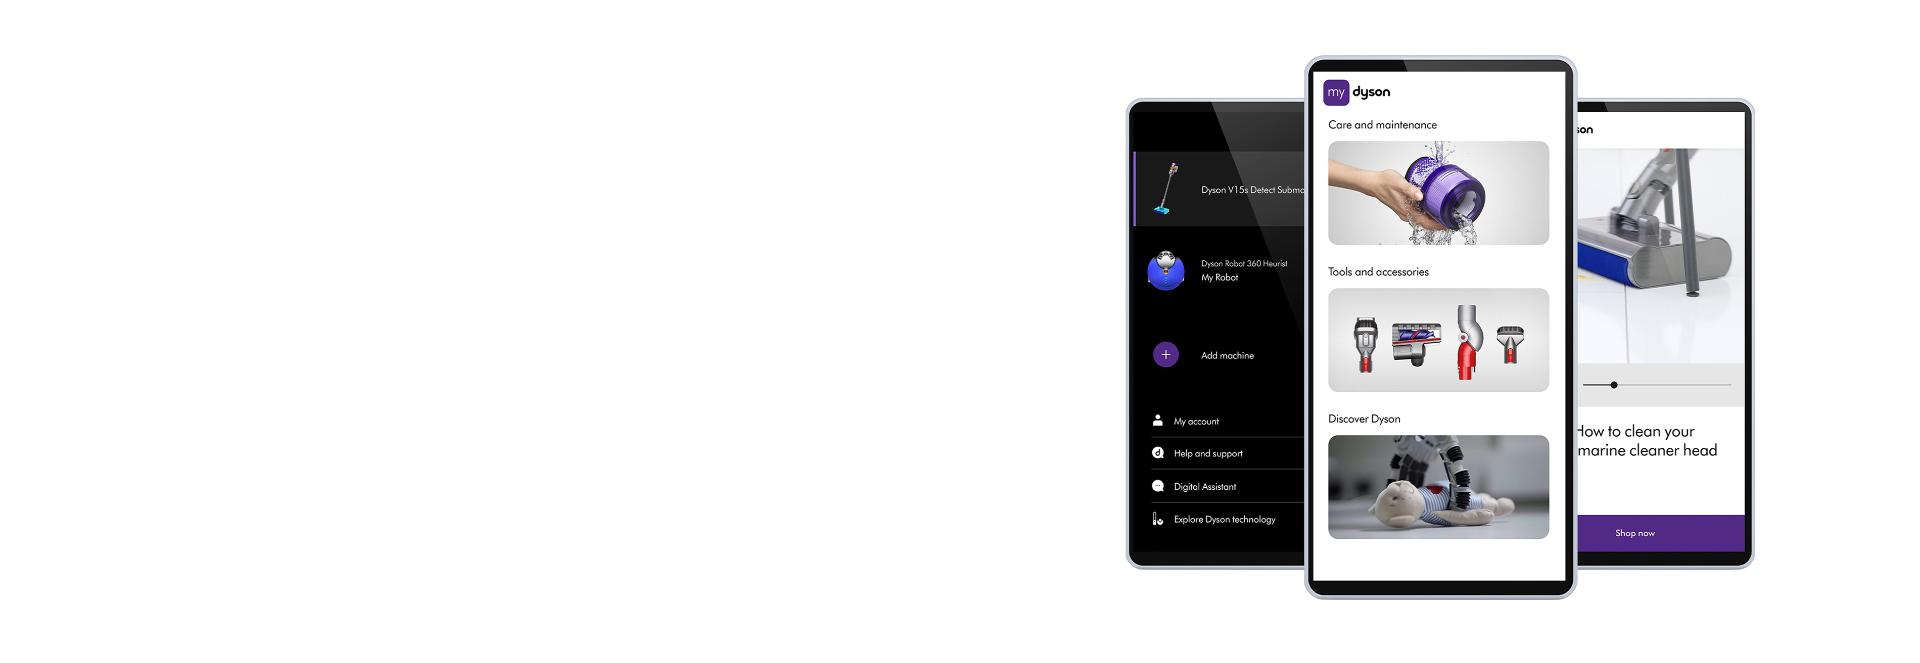 Aplikacja MyDyson wyświetlona na ekranie smartfona.